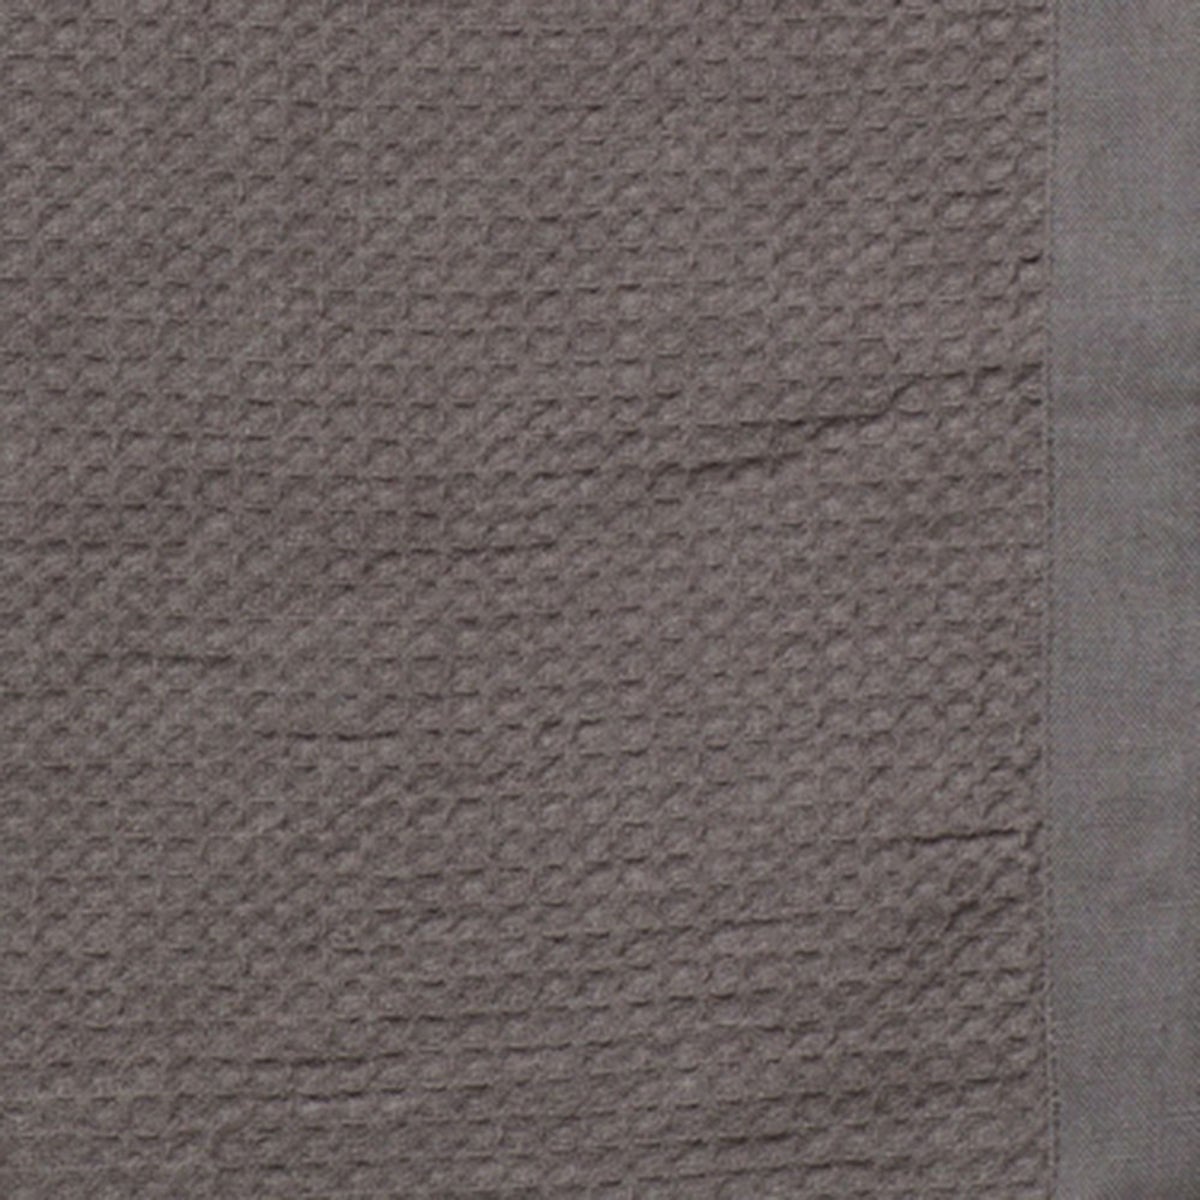 Belgian Flax Linen Waffle Weave Hand Towel - Dark Gray